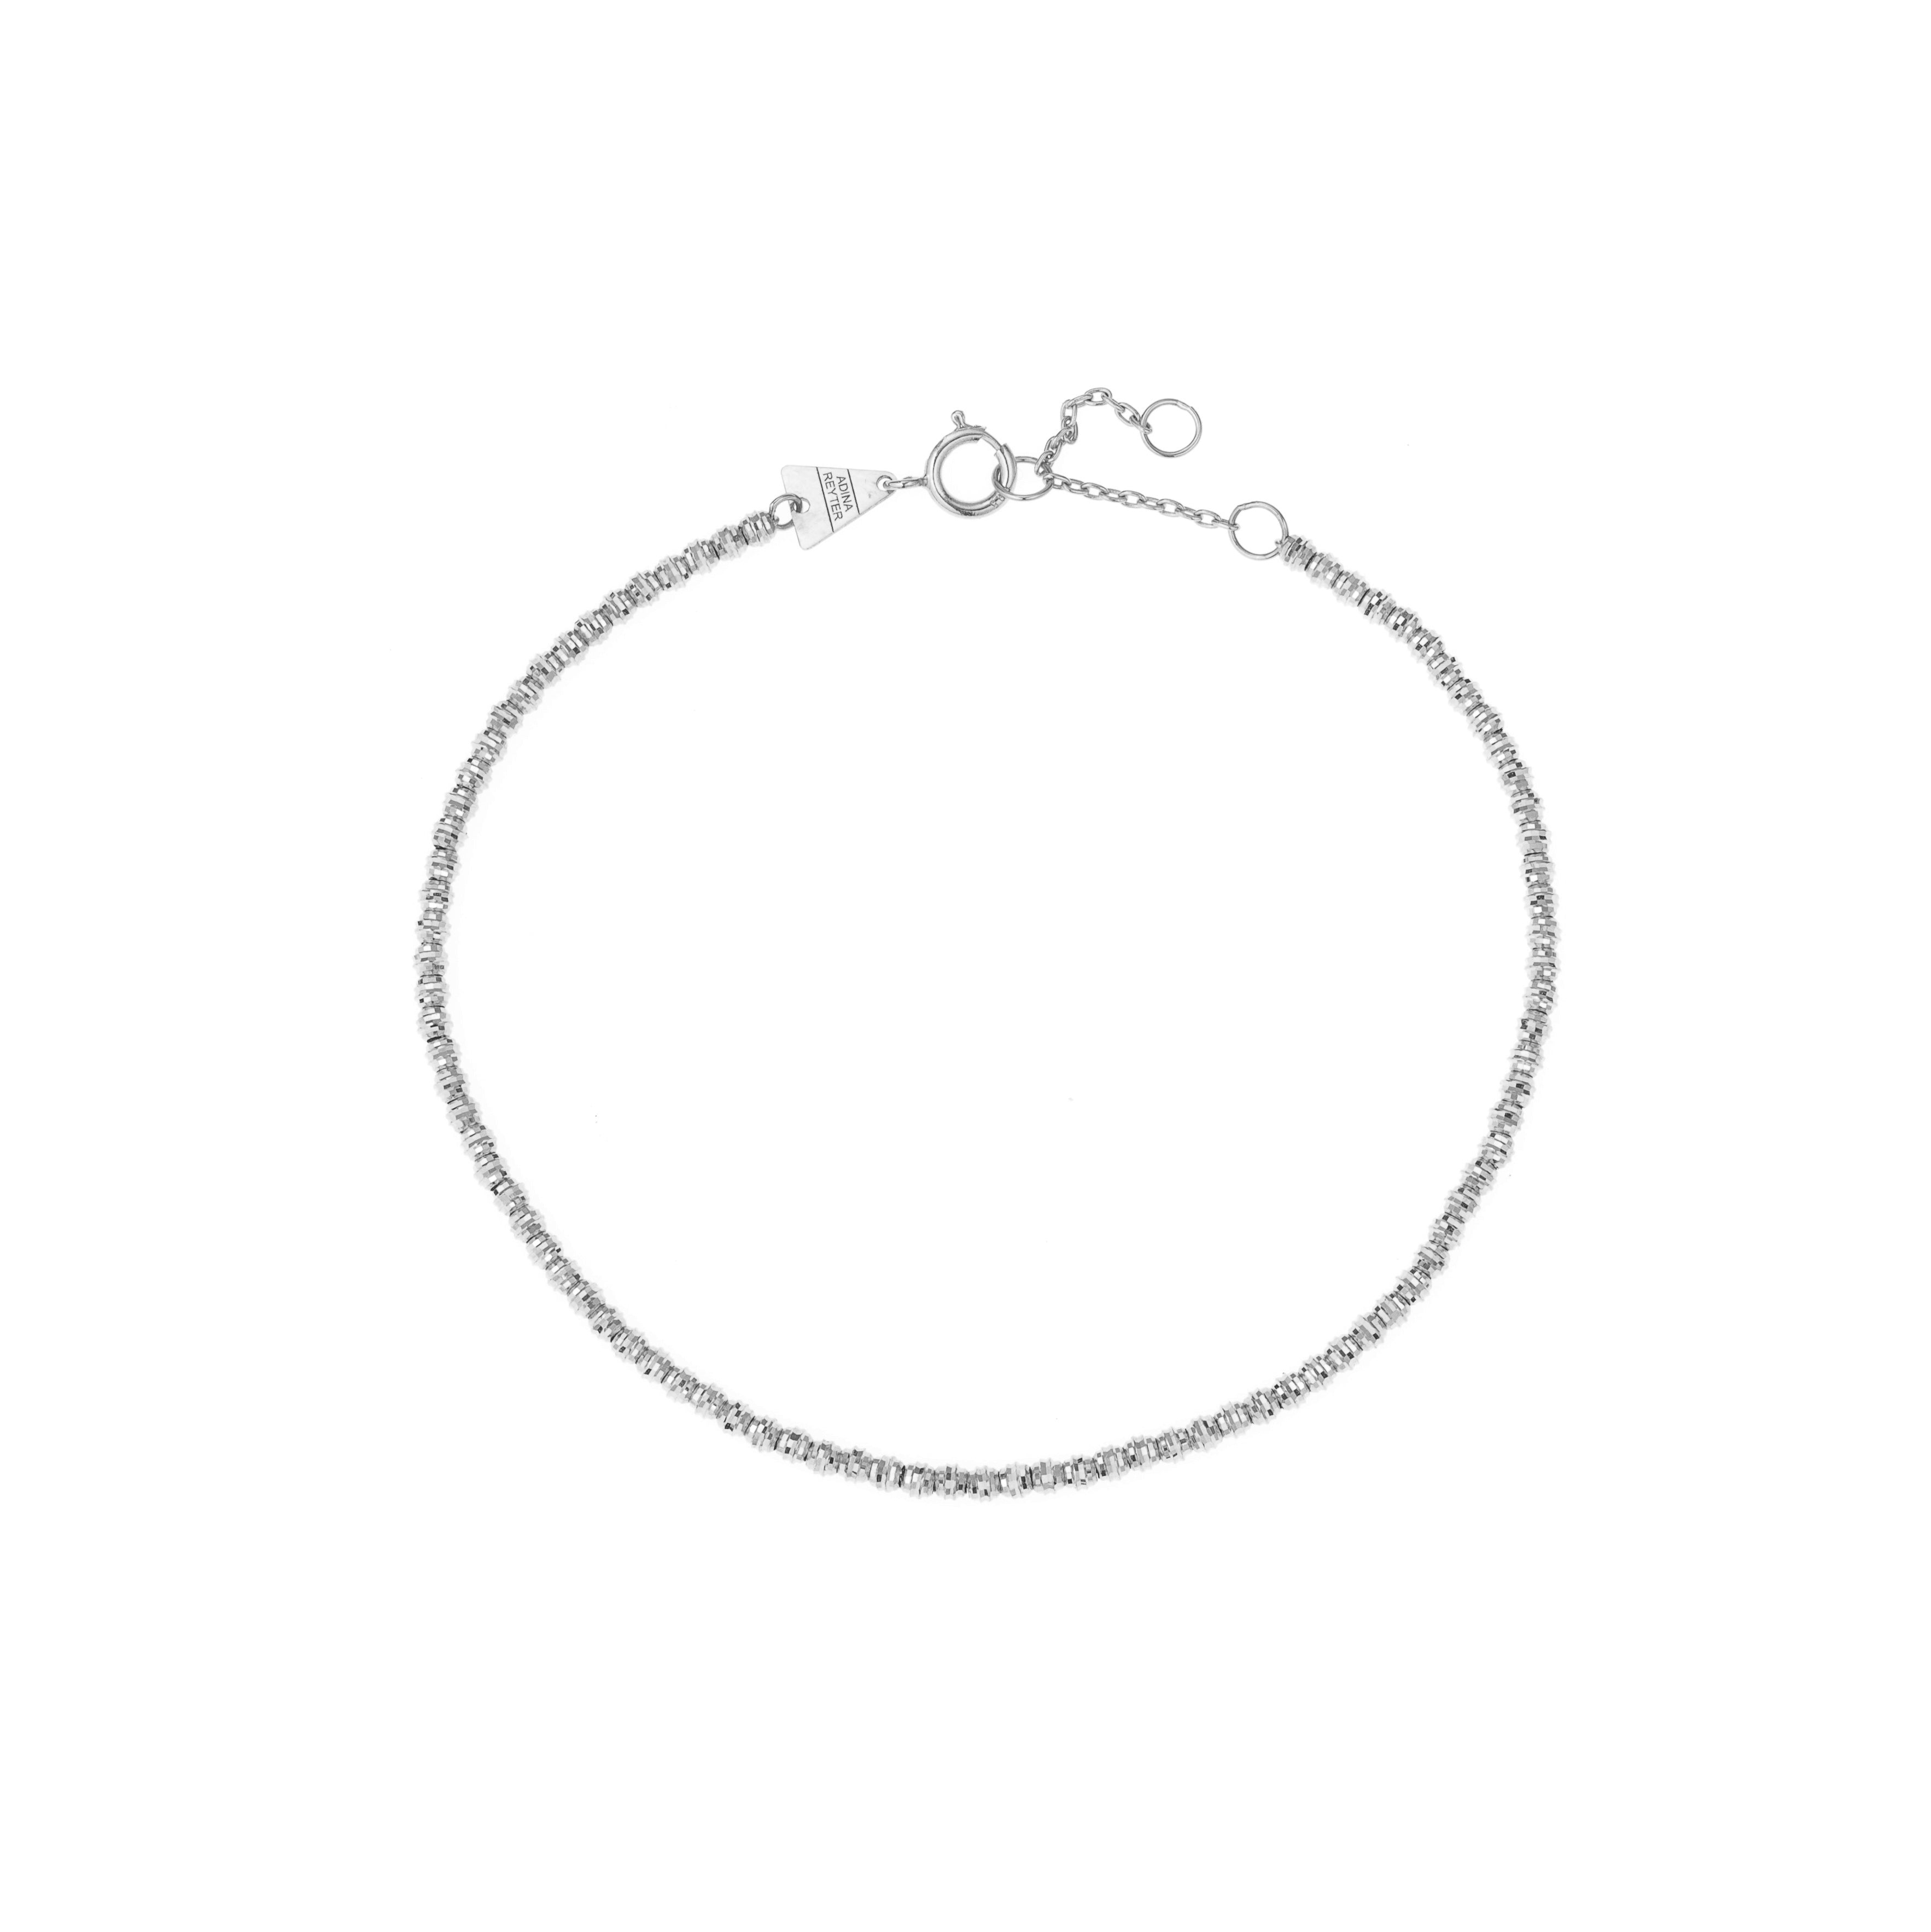 Bead Chain Bracelet in Sterling Silver